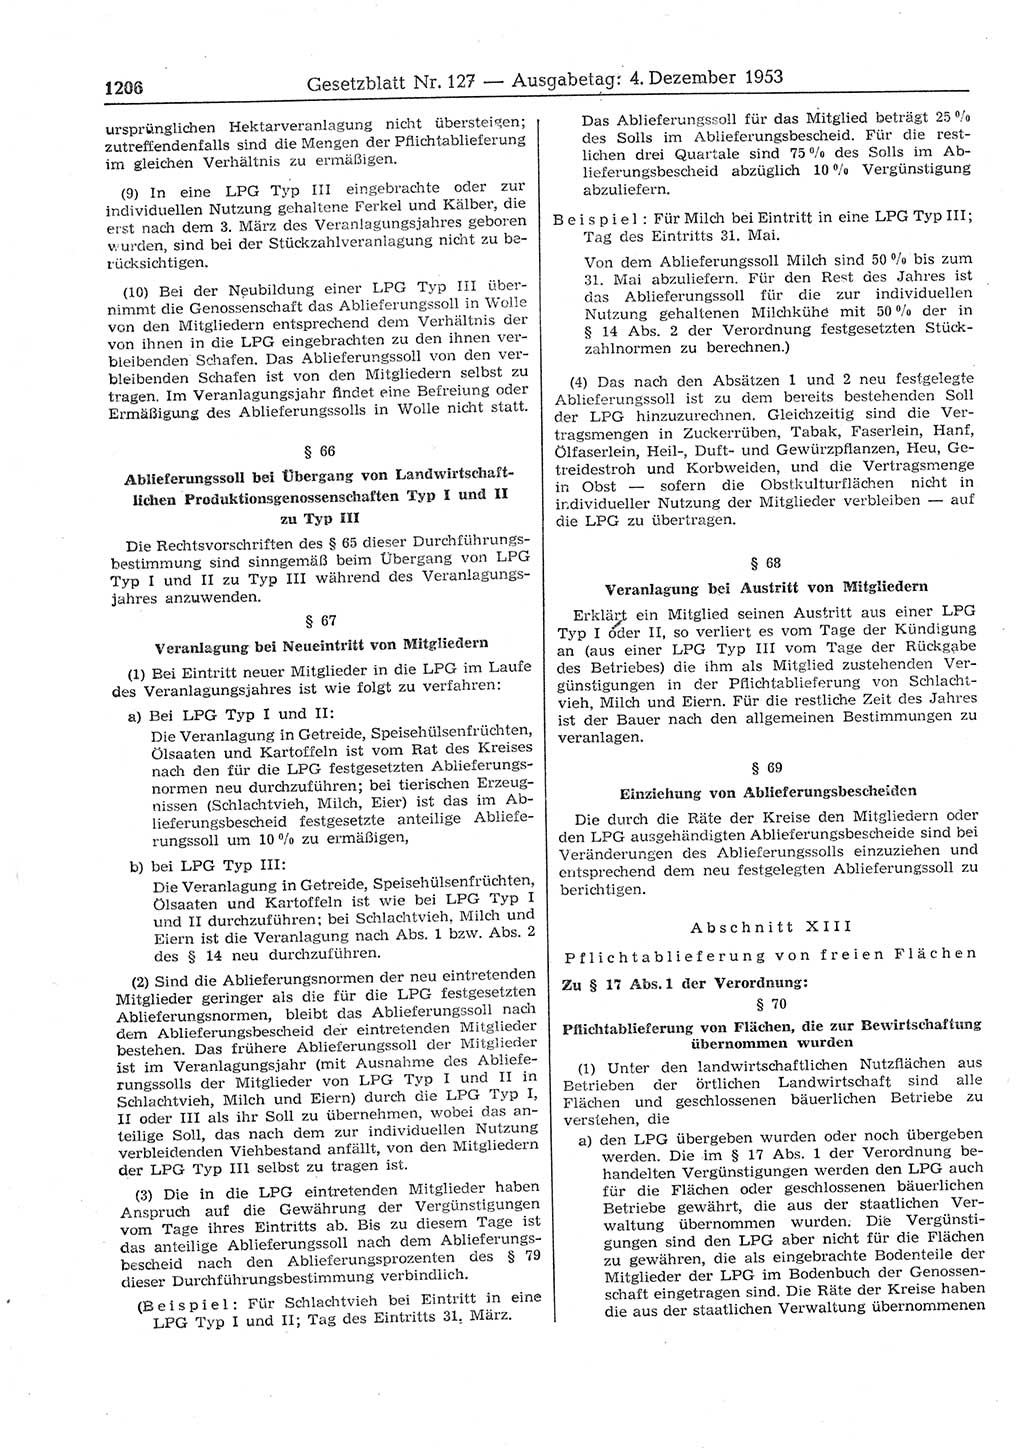 Gesetzblatt (GBl.) der Deutschen Demokratischen Republik (DDR) 1953, Seite 1206 (GBl. DDR 1953, S. 1206)